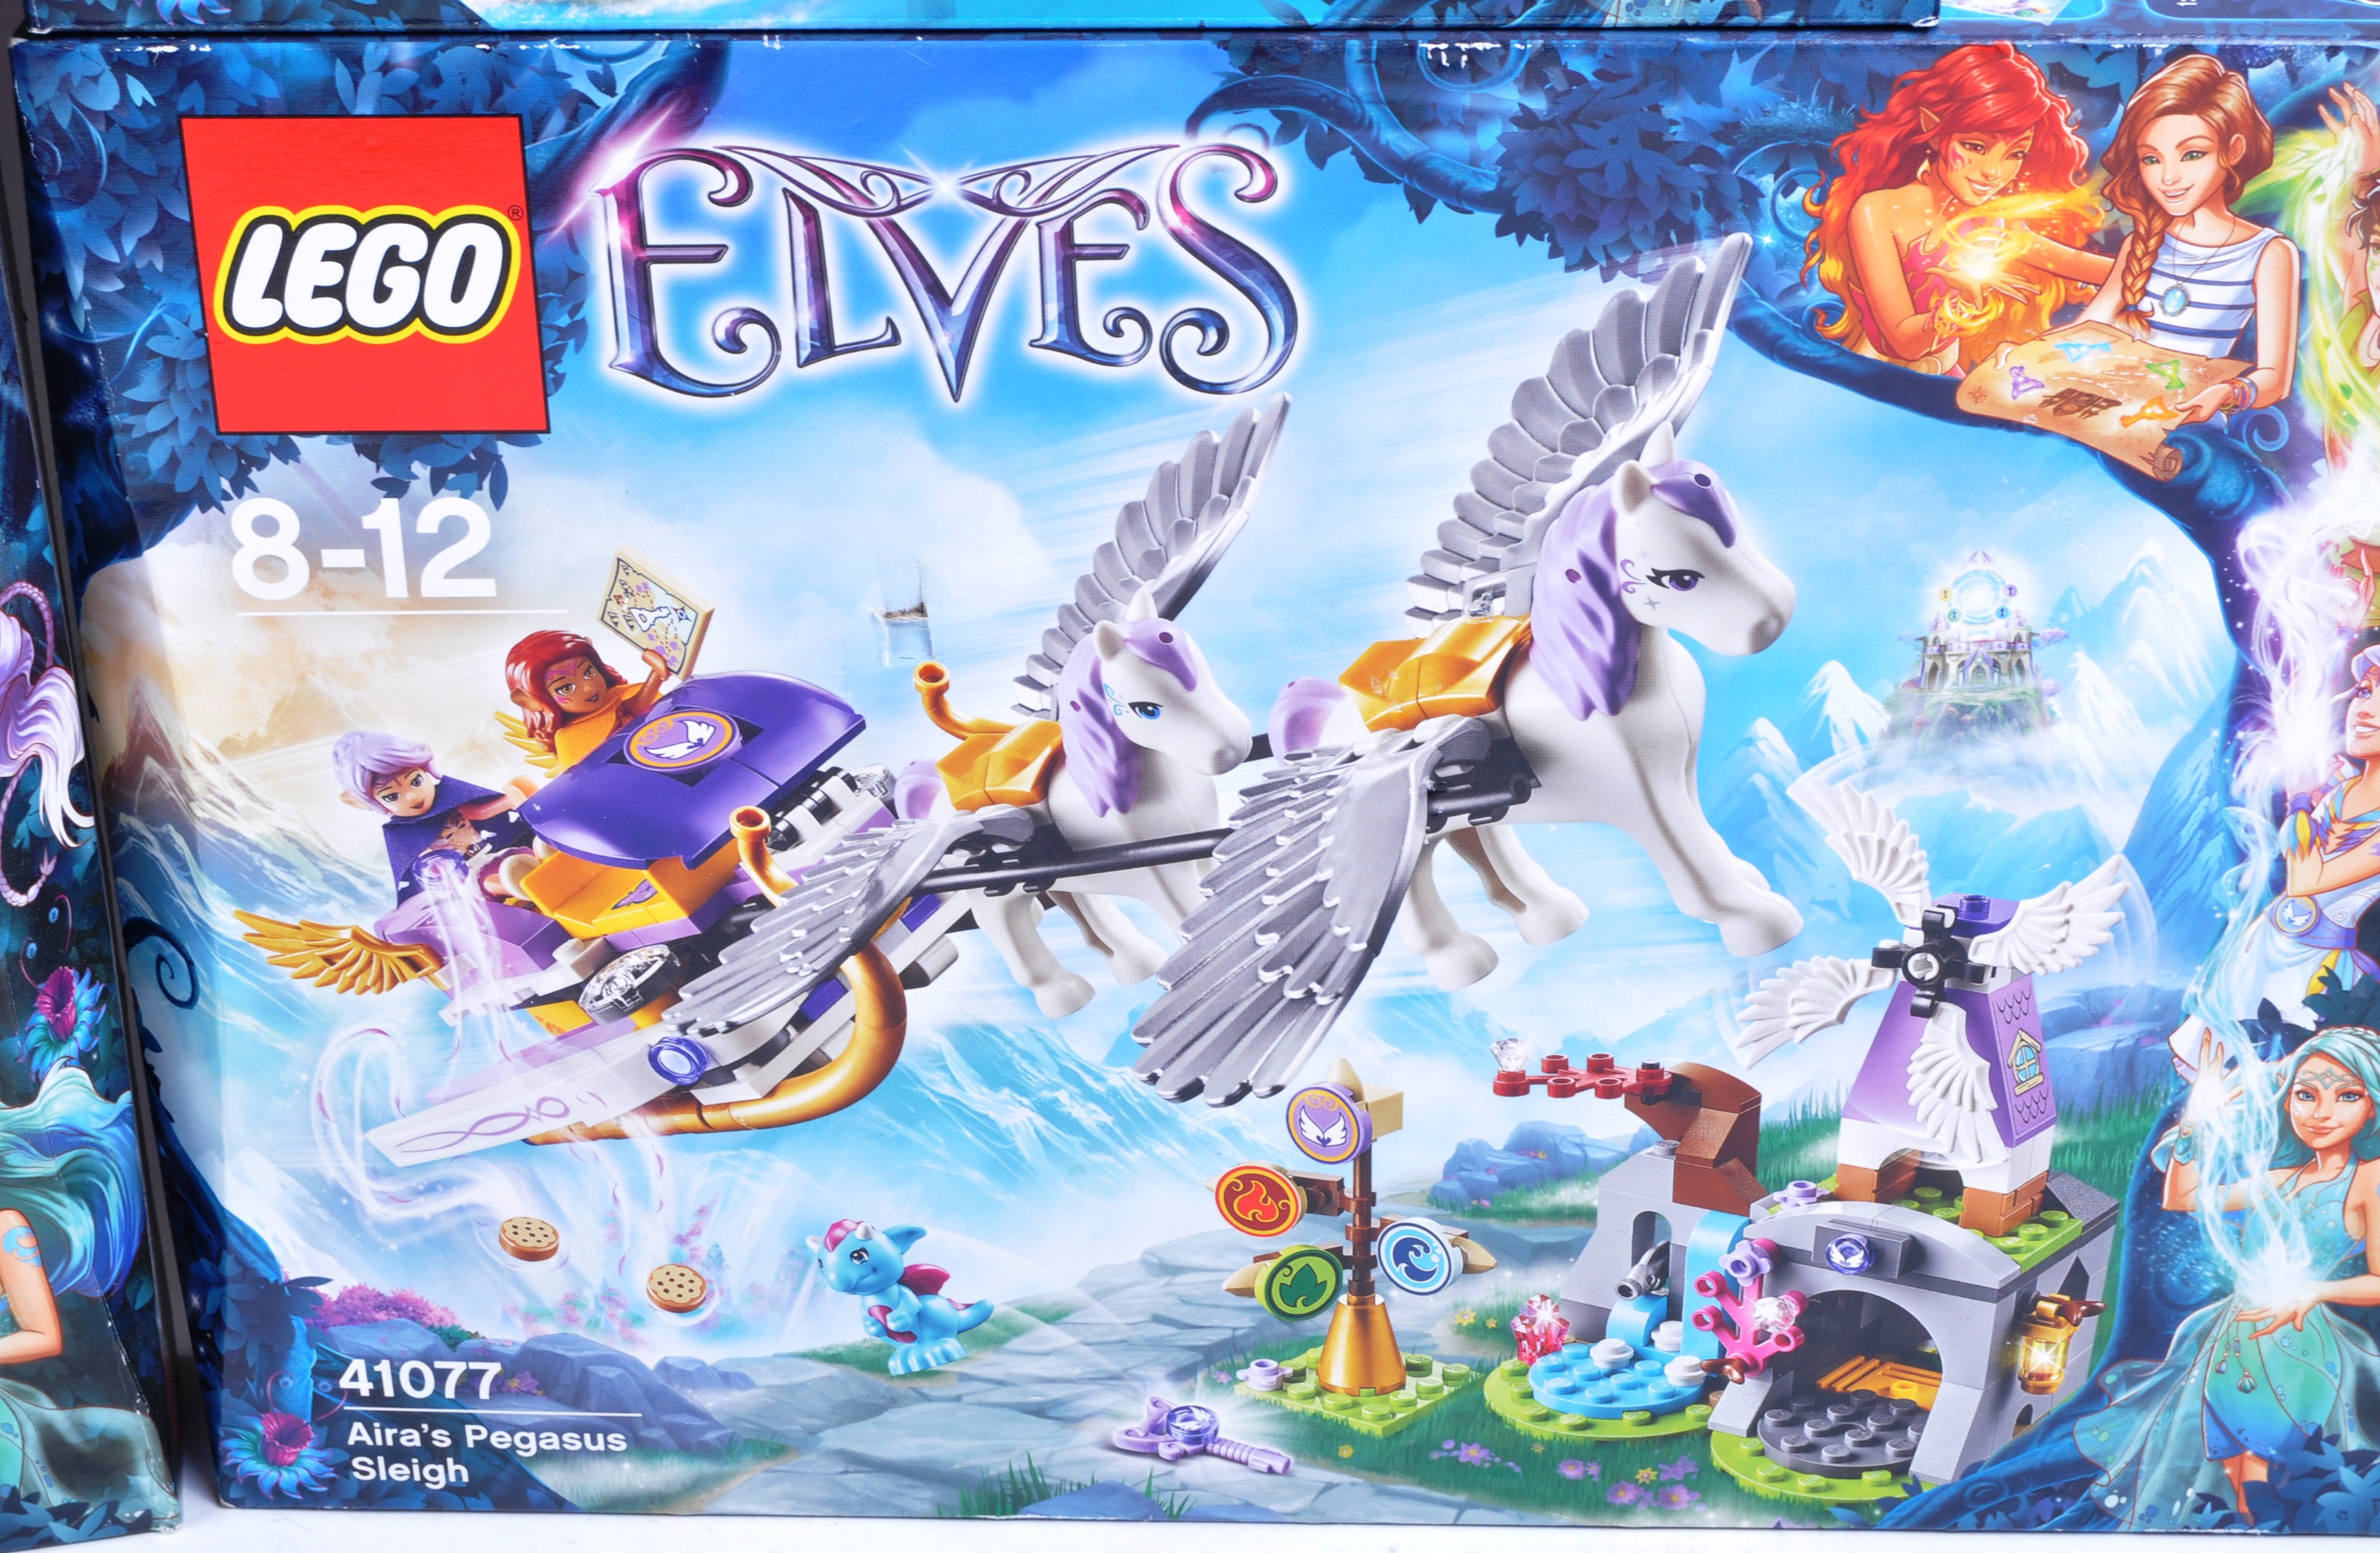 LEGO SETS - LEGO ELVES - Image 5 of 7